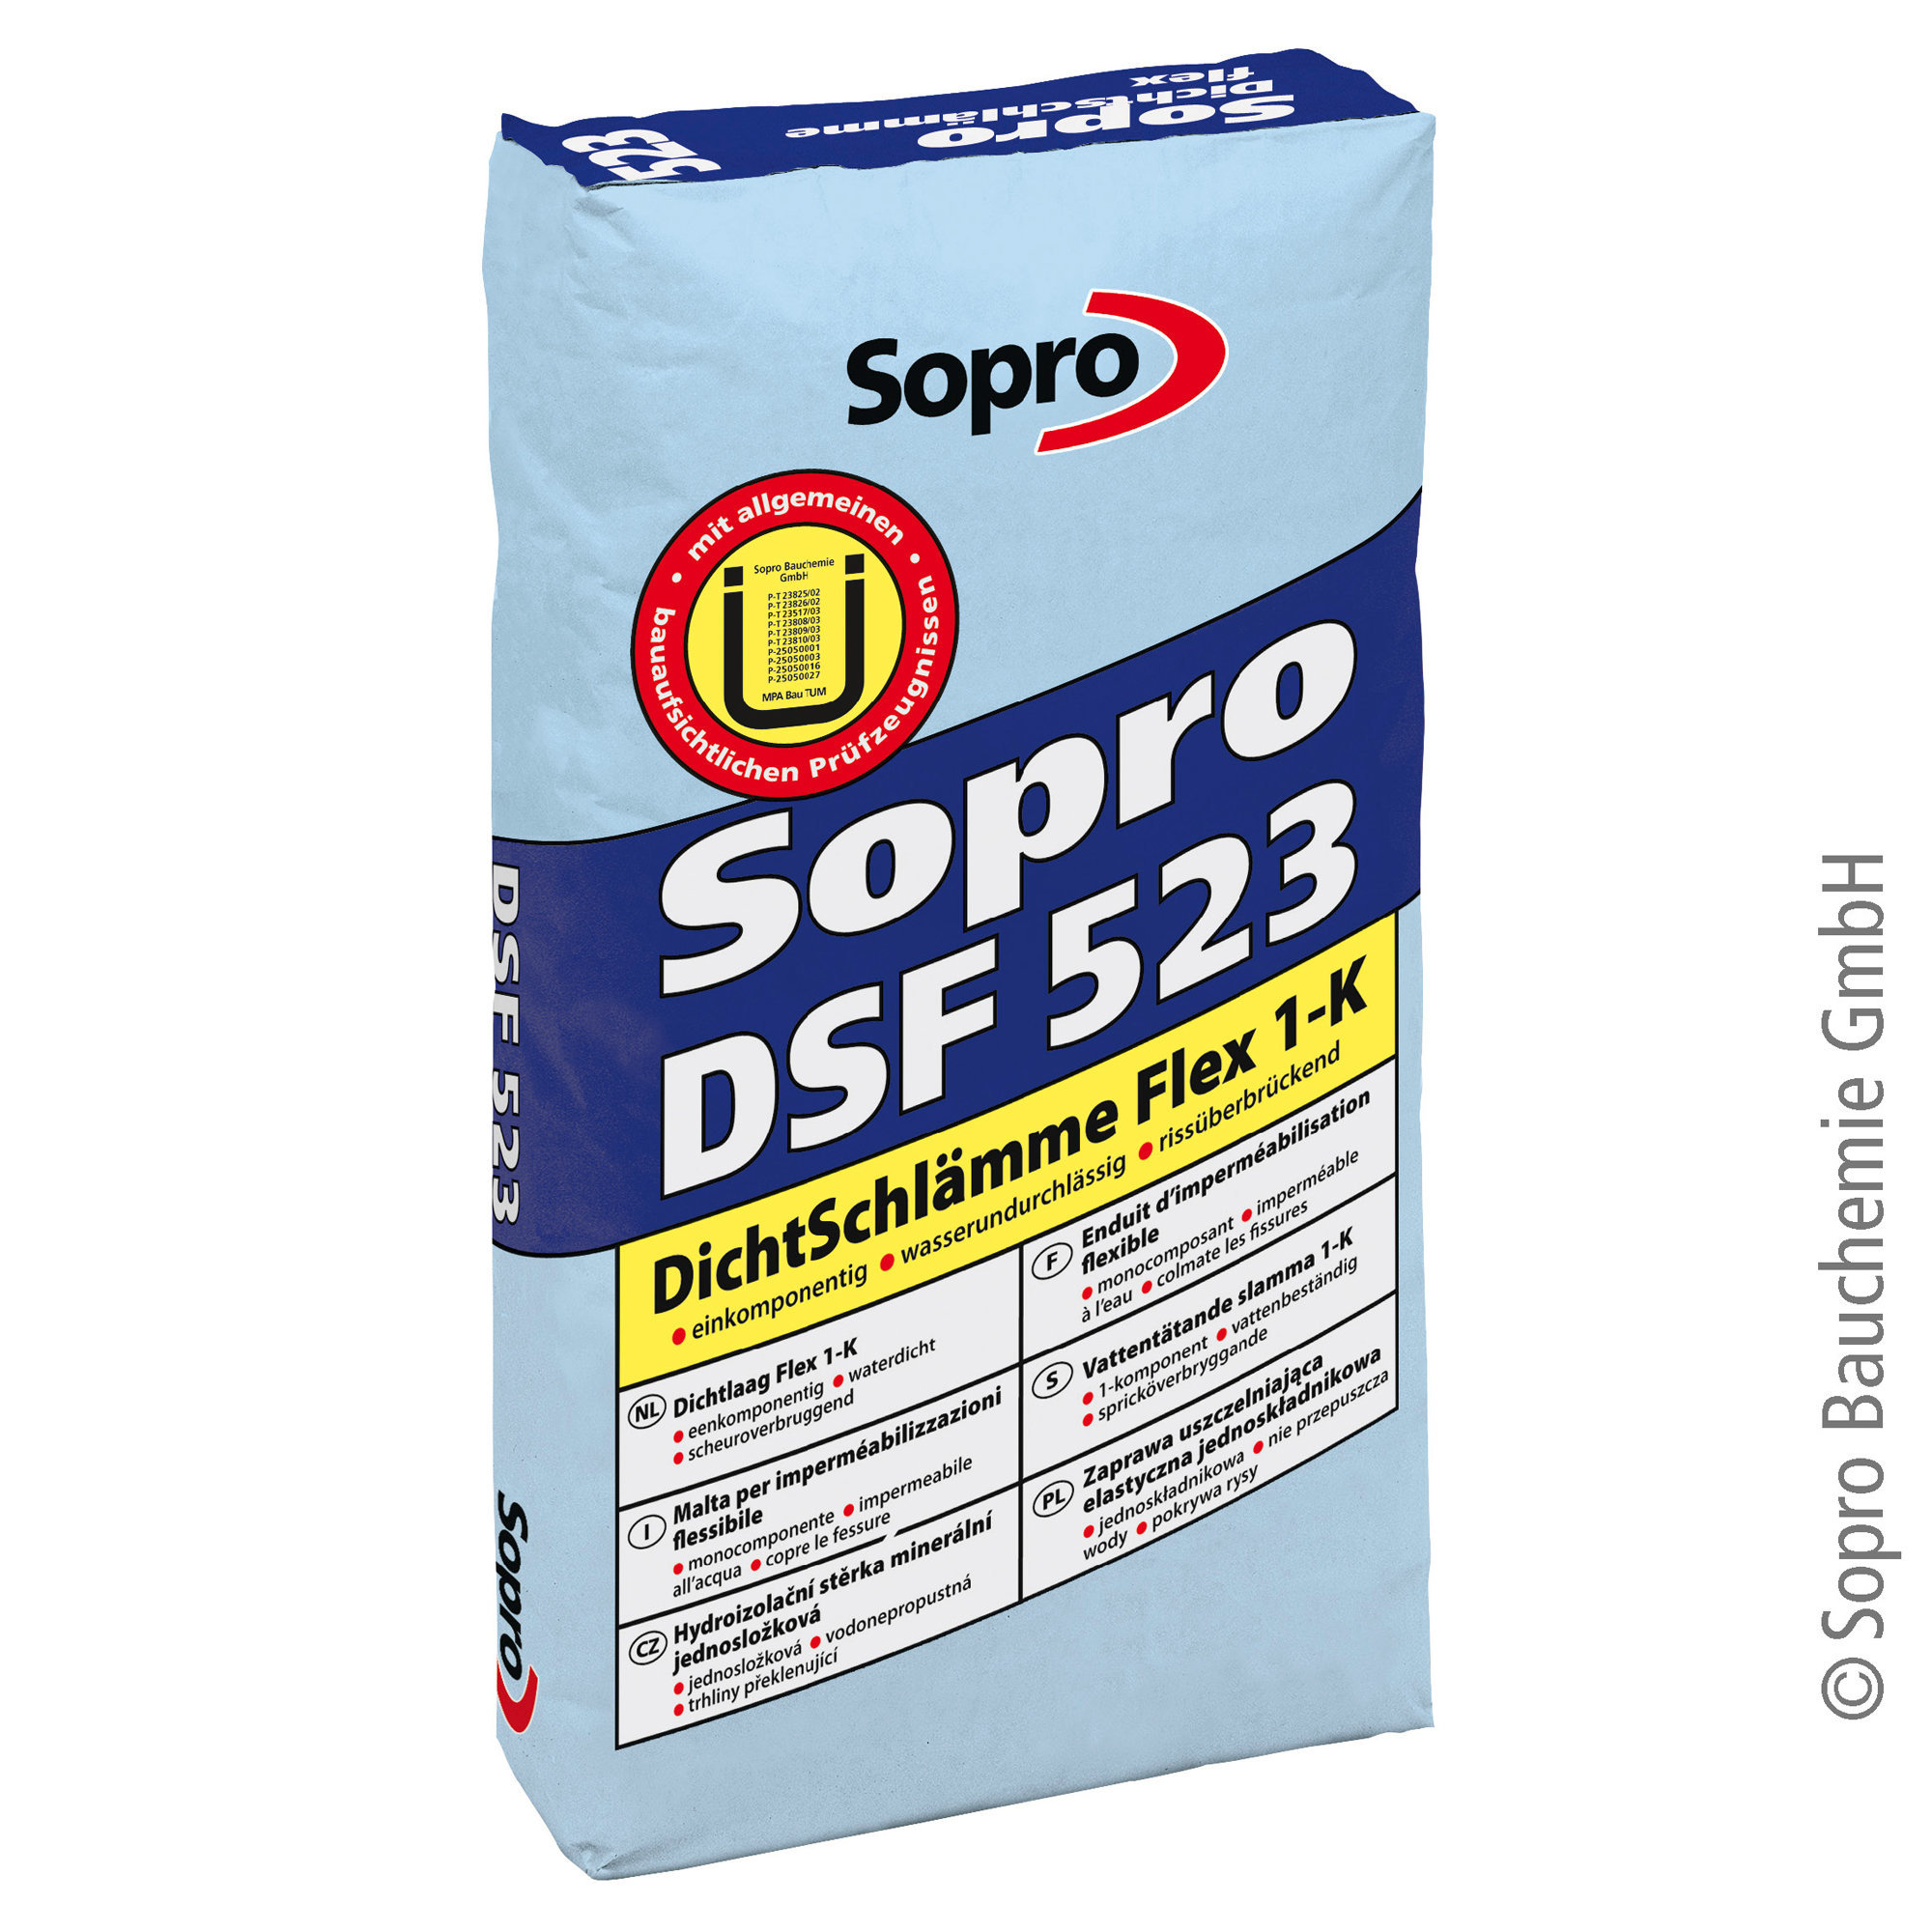 Sopro DSF 523 1-K DichtSchlämme Flex